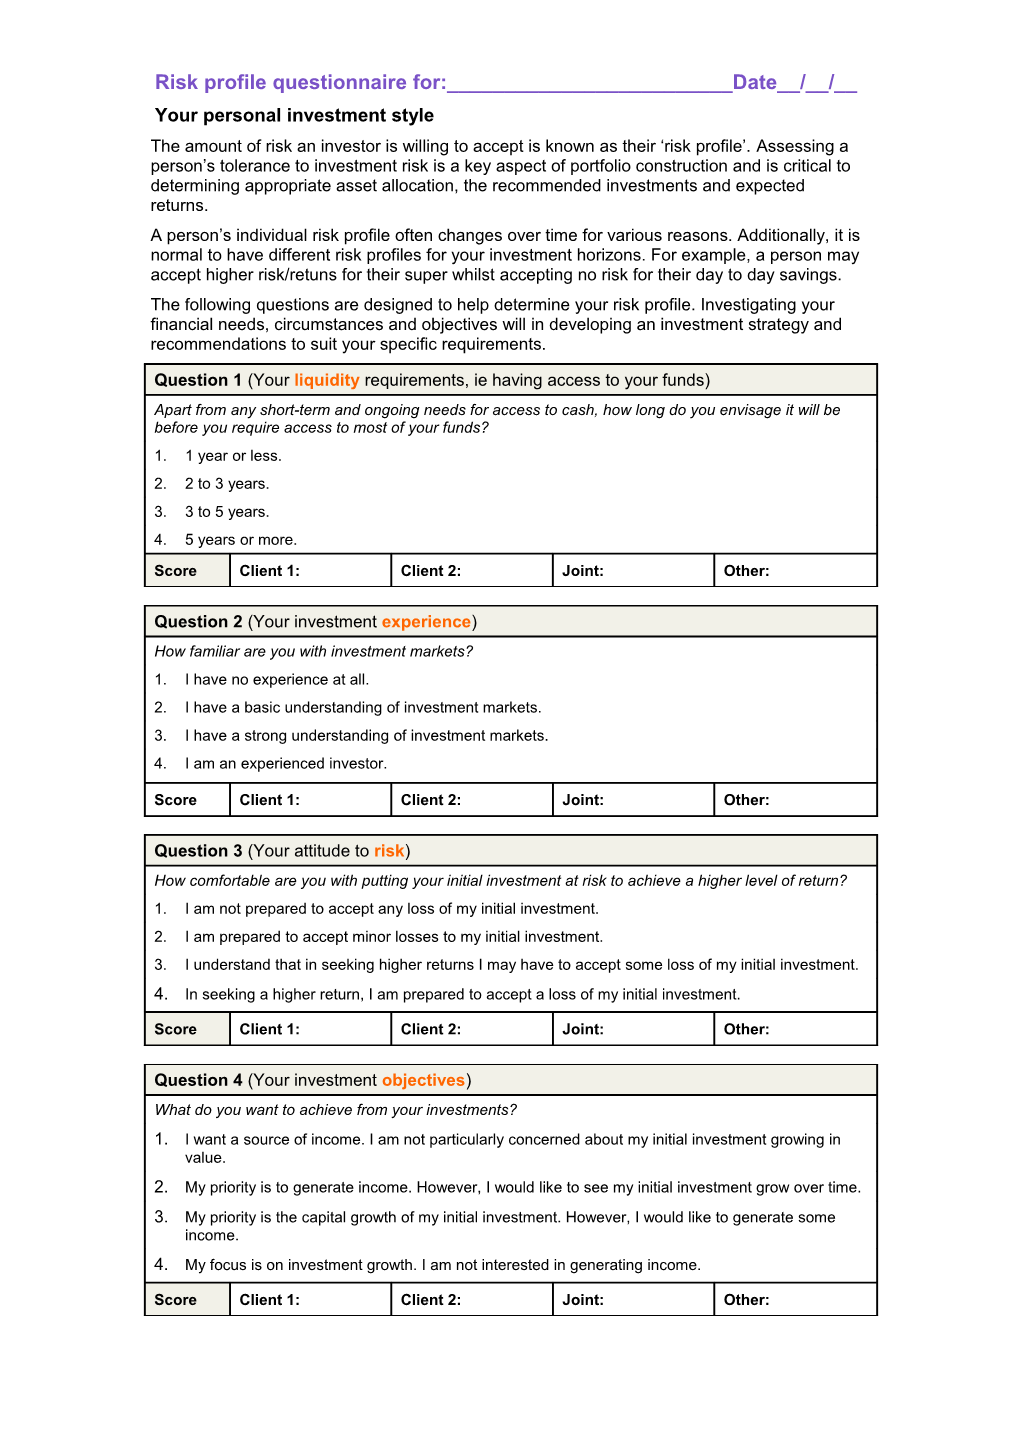 Risk Profile Questionnaire